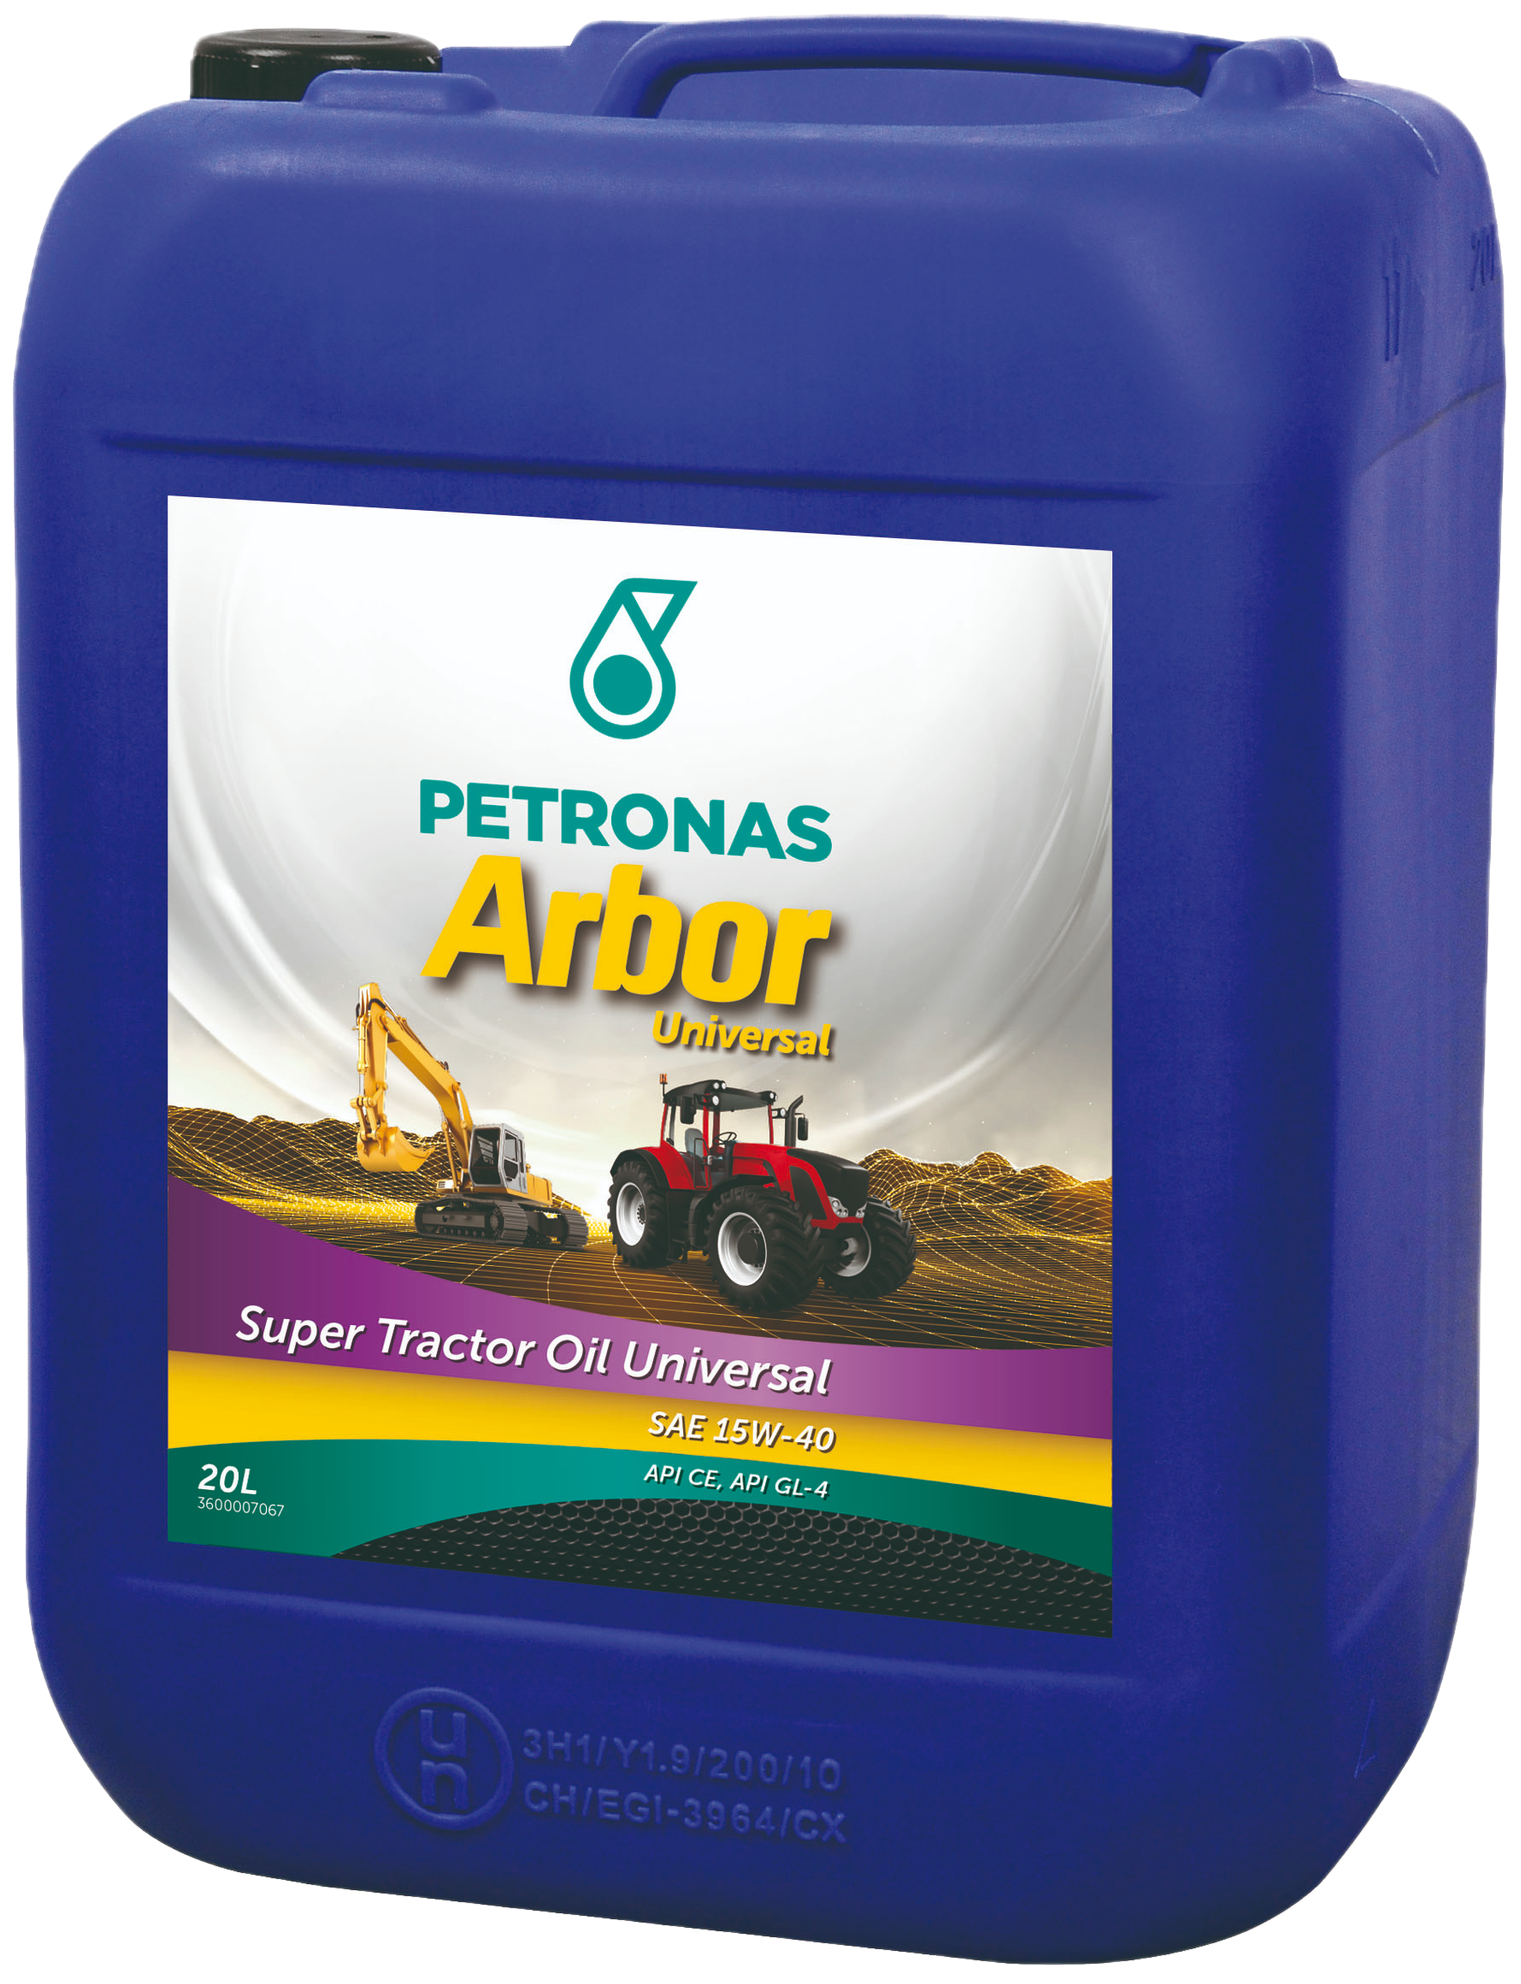 P36441910-20 Universele smeermiddelen (S.T.O.U.) voor motoren, transmissies, hydraulische systemen en olieremmen van tractors en landbouwmachines.